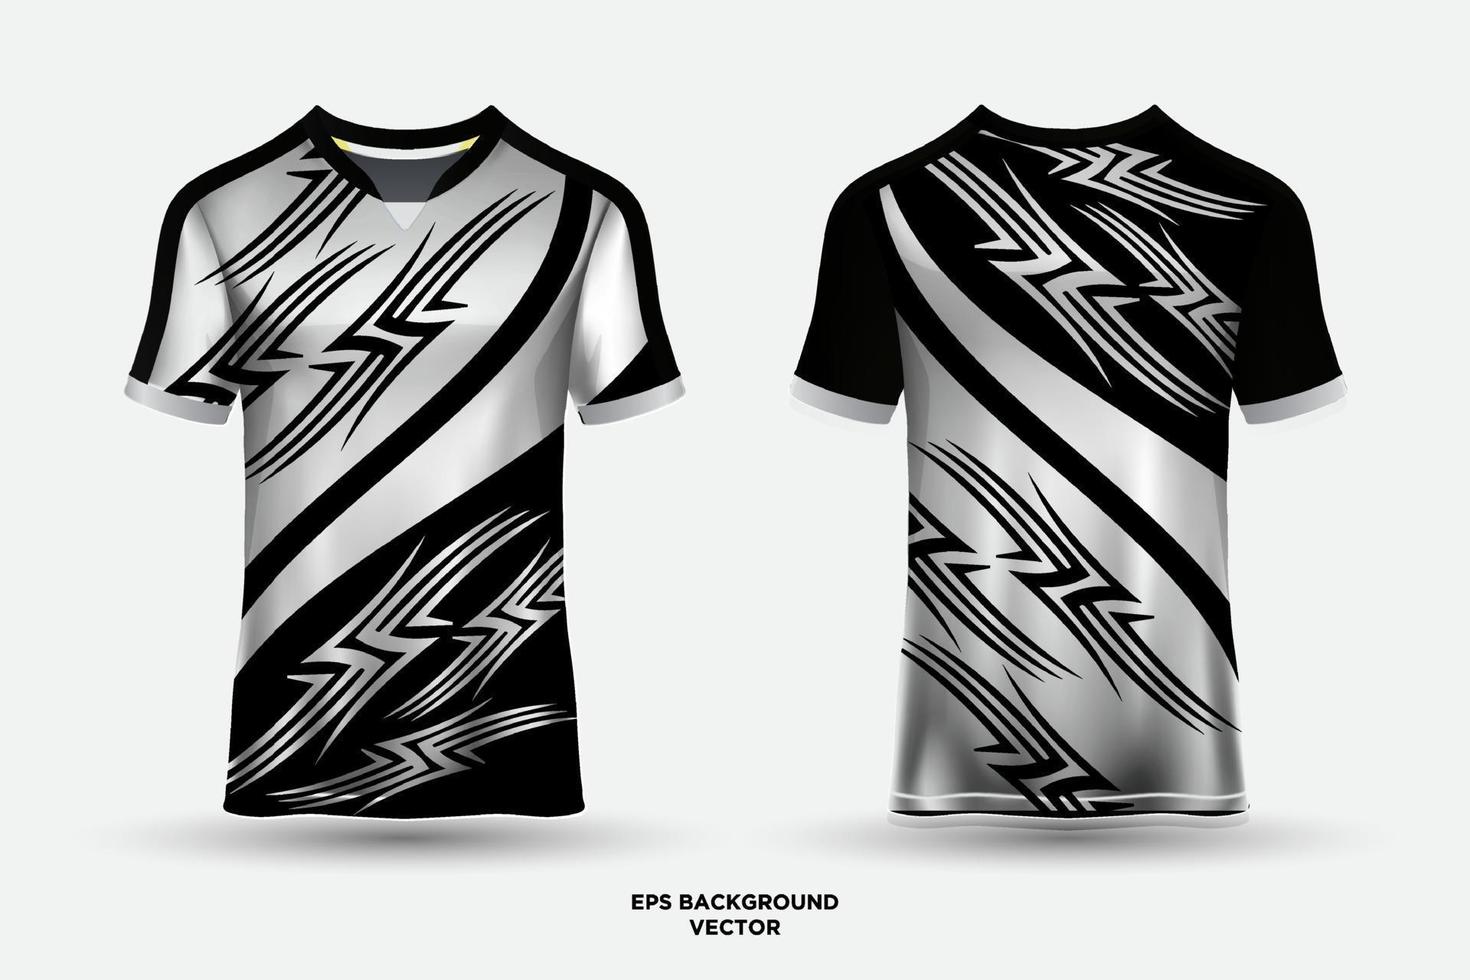 maravilloso diseño de camiseta adecuado para deportes, carreras, fútbol, juegos y vectores de deportes electrónicos.